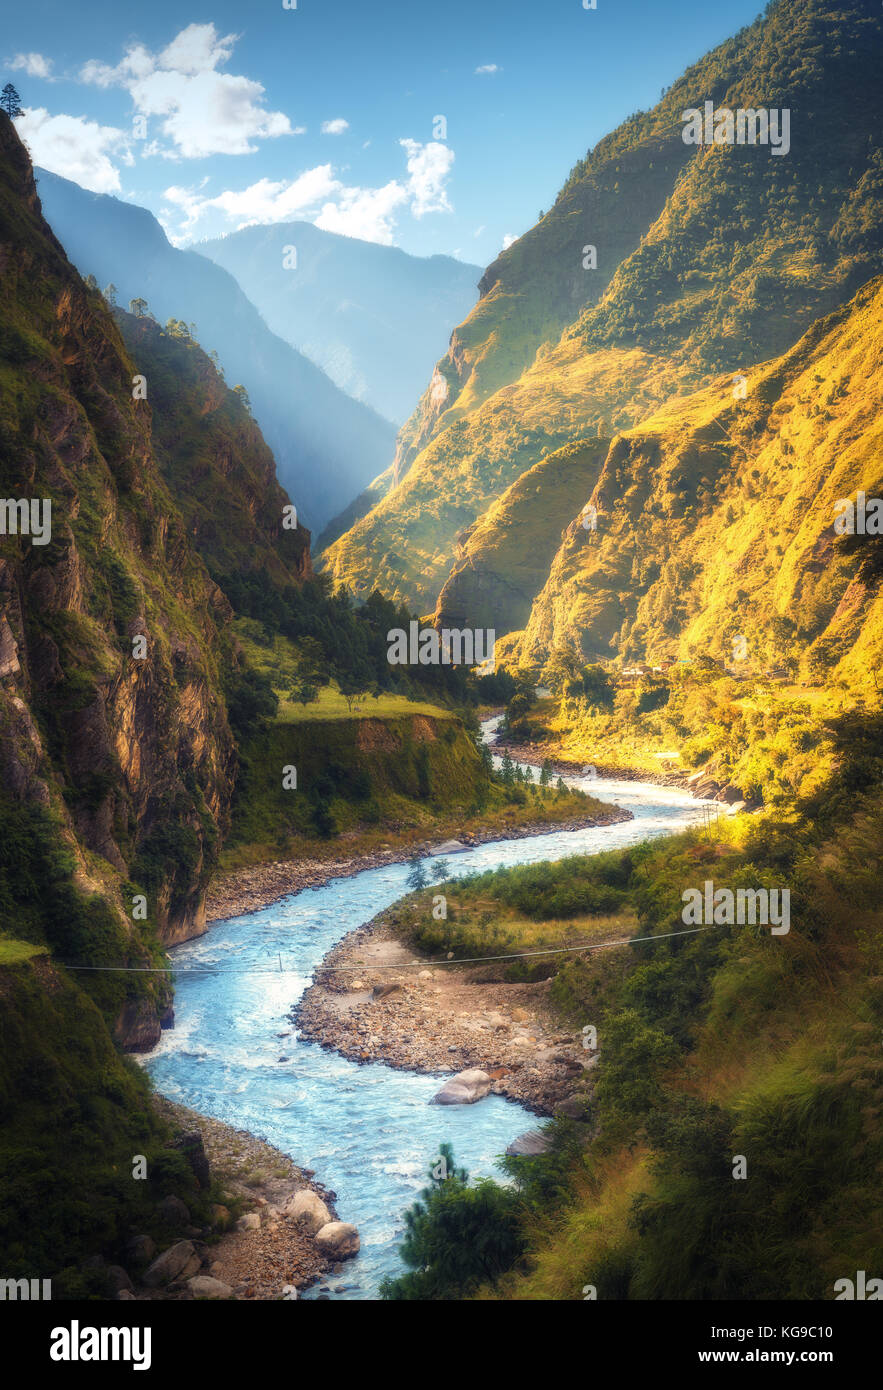 Un paysage extraordinaire avec des montagnes de l'himalaya, belle rivière en courbe, vert forêt, ciel bleu avec des nuages et soleil jaune en automne au Népal. m Banque D'Images